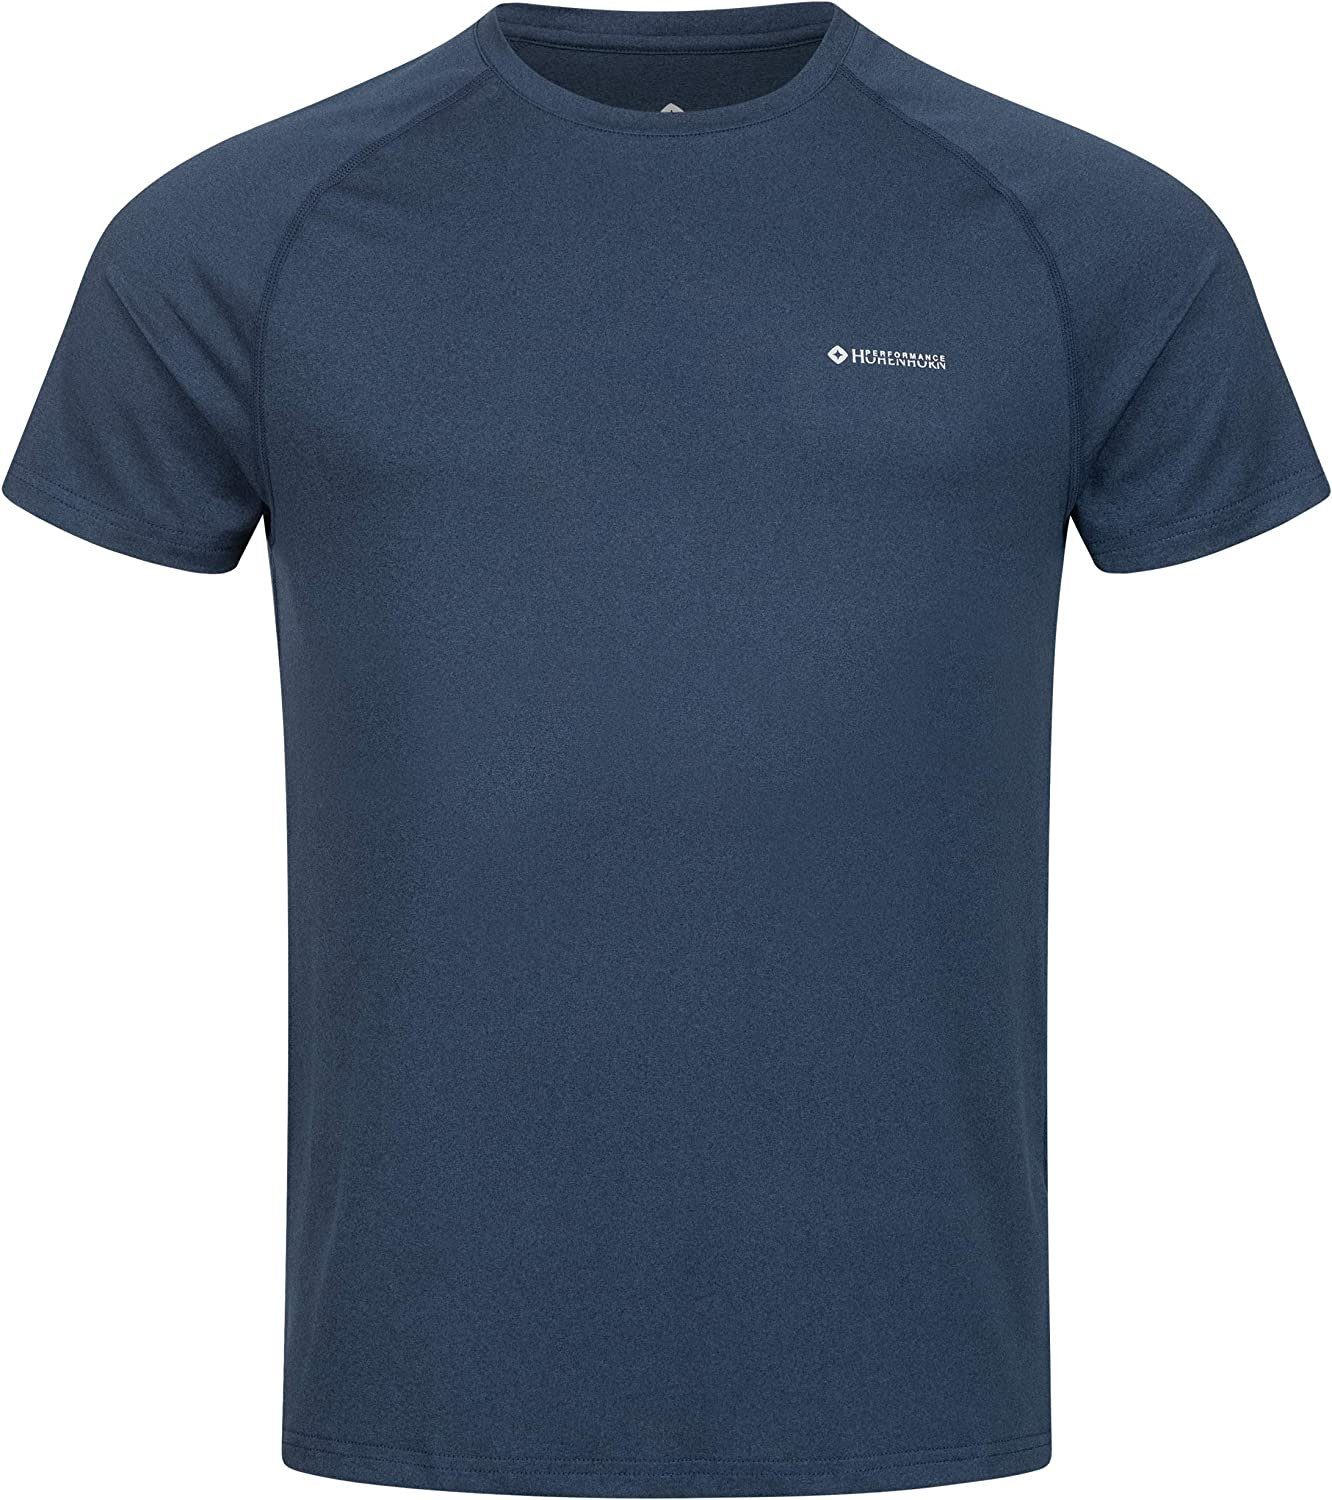 Blau Weiß, Dunkelgrau, Set Höhenhorn Höhenhorn Kannin 3er T-Shirt